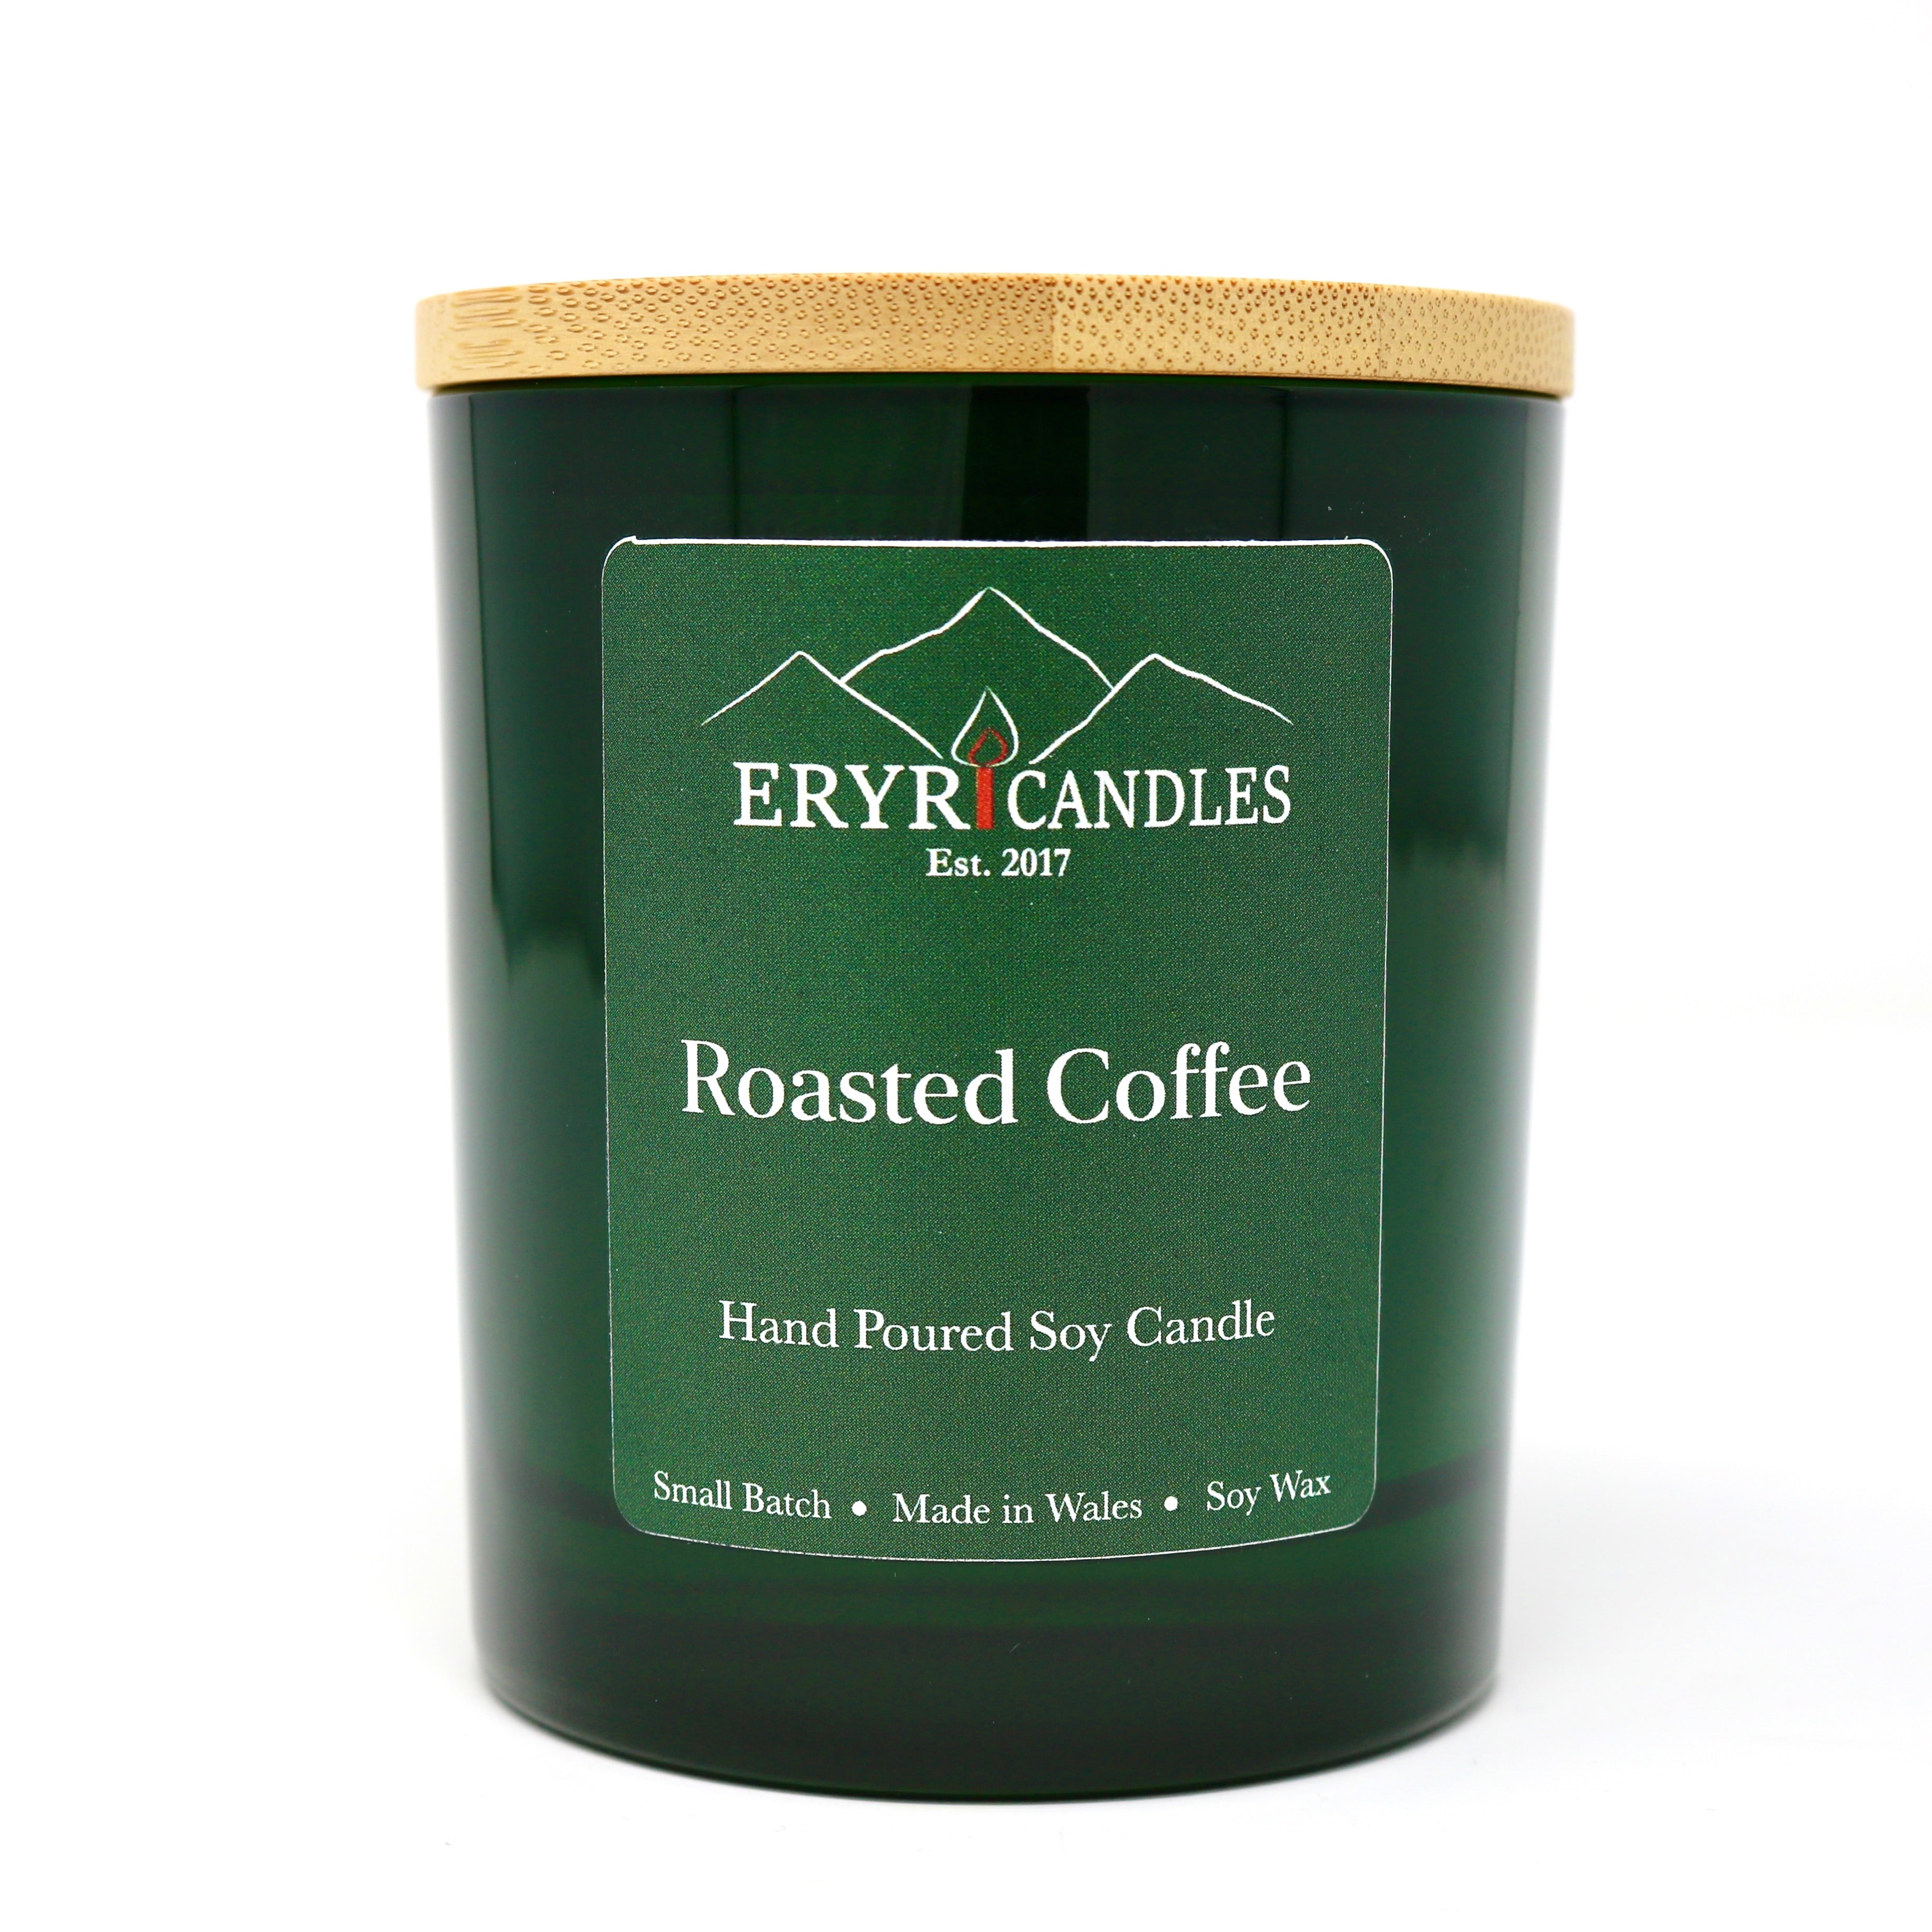 Roasted Coffee